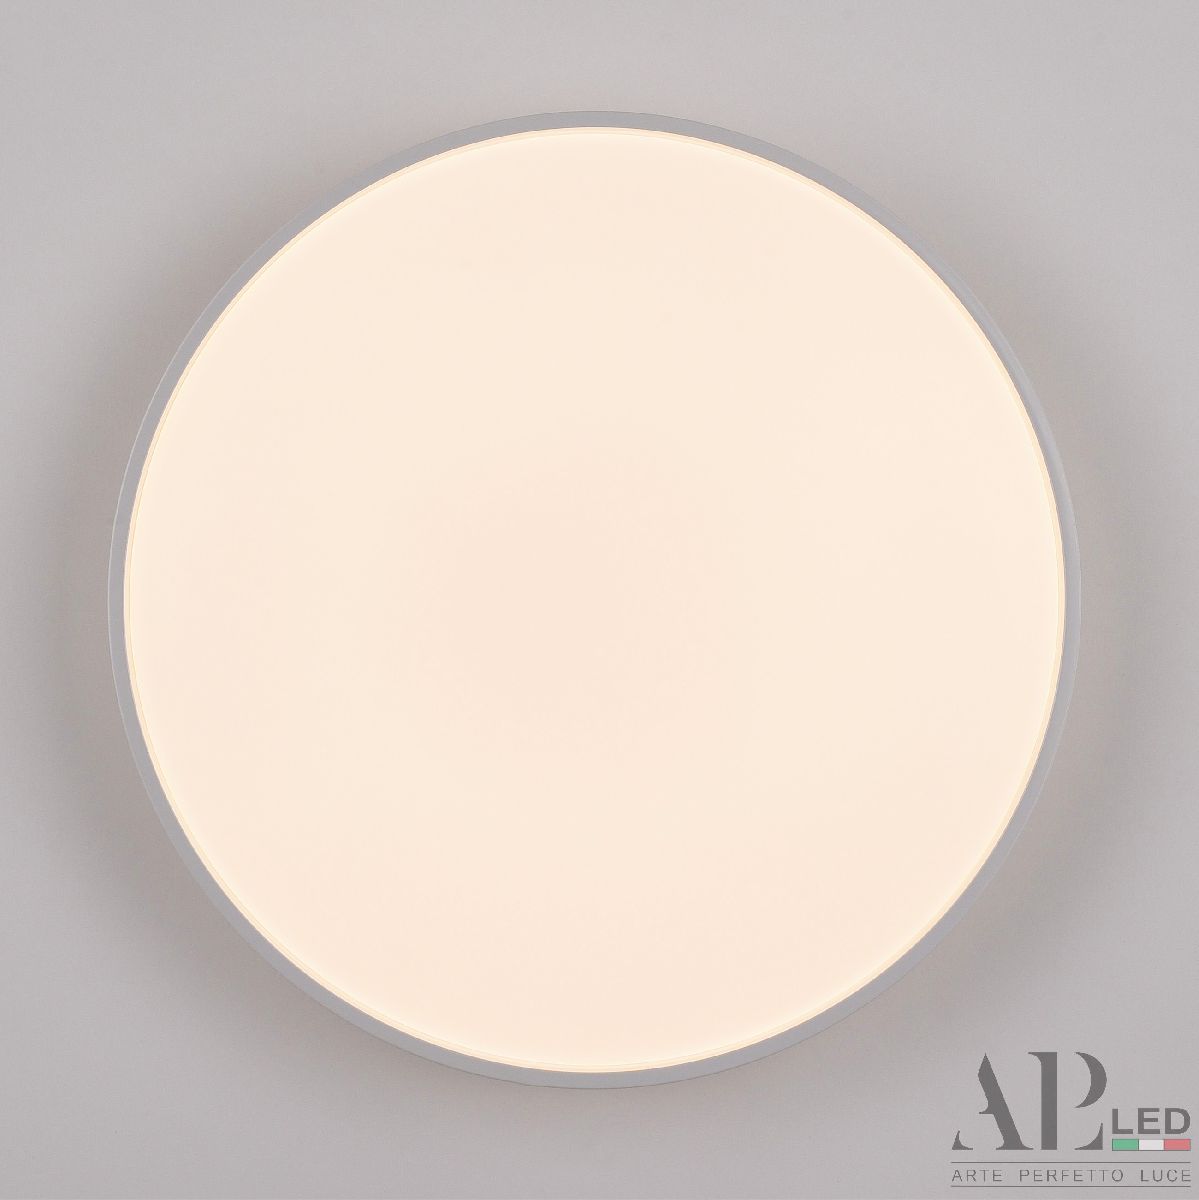 Потолочный светильник Arte Perfetto Luce Toscana 3315.XM302-1-374/24W/4K White TD